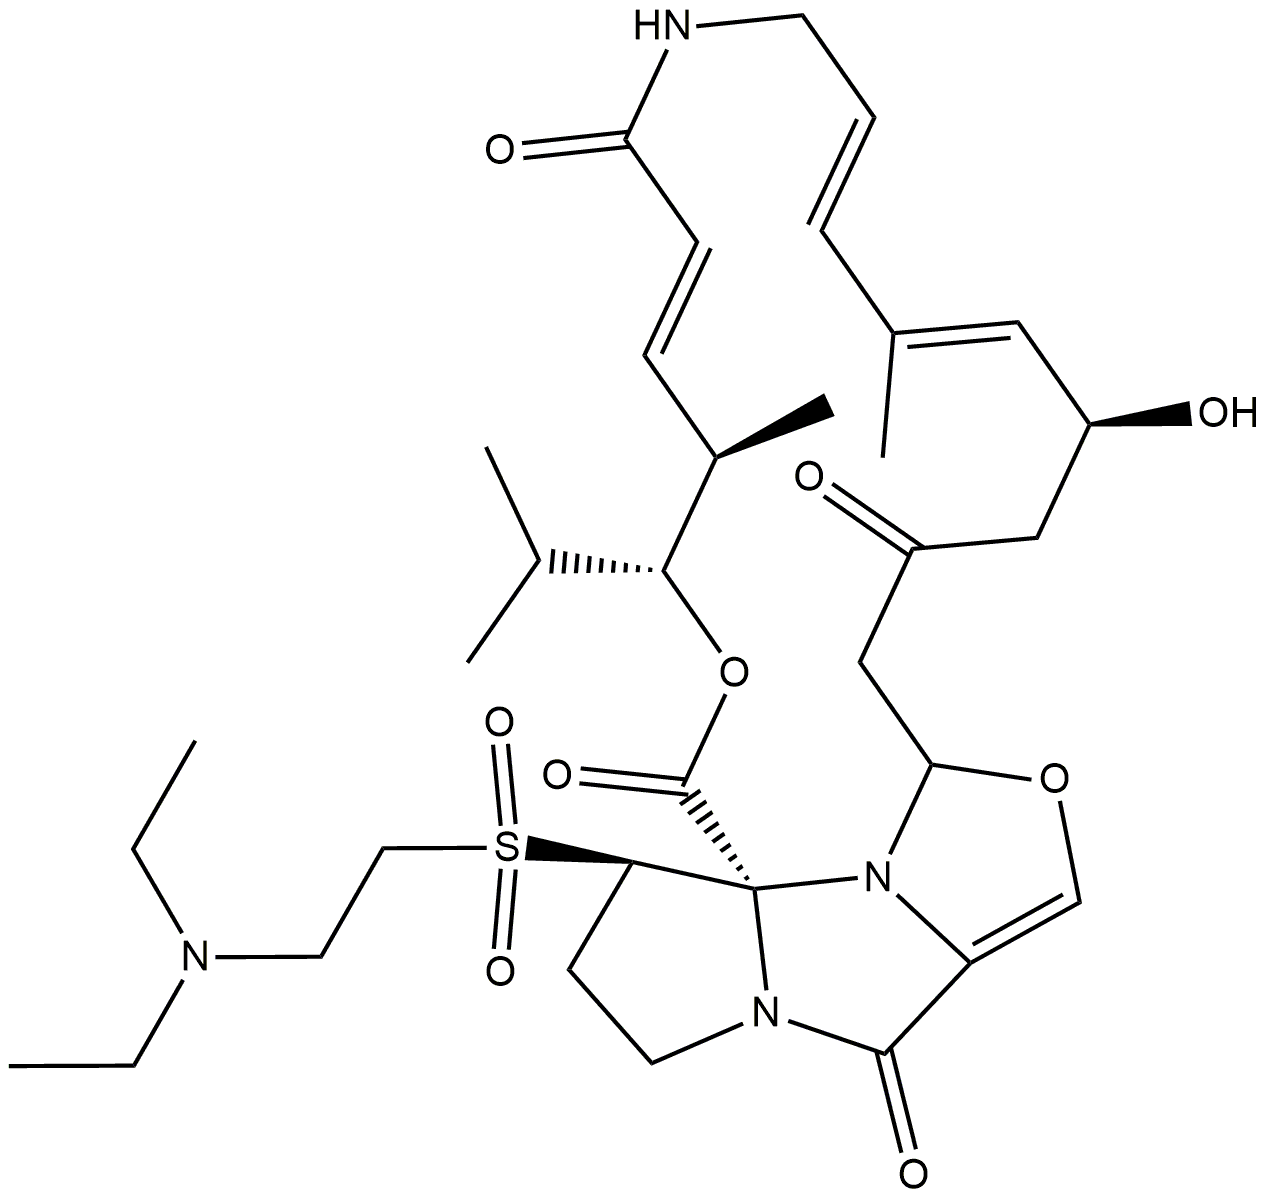 Dalfopristin, a component of quinupristin/dalfopristin